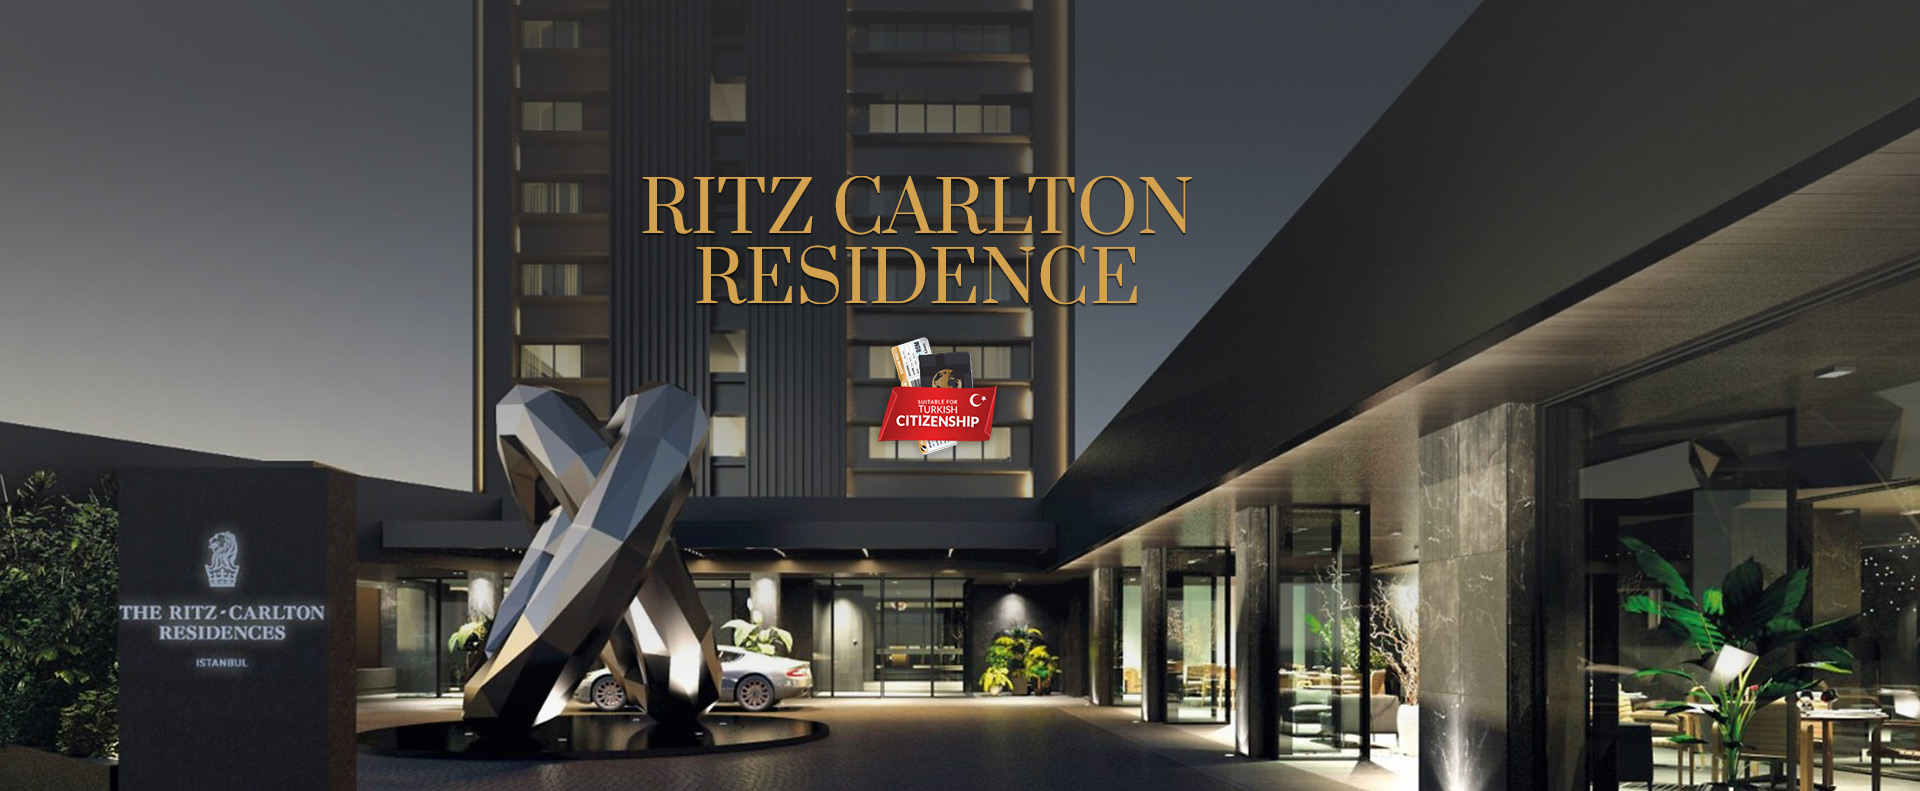 Ritz-Carlton-Residence-SLIDER2